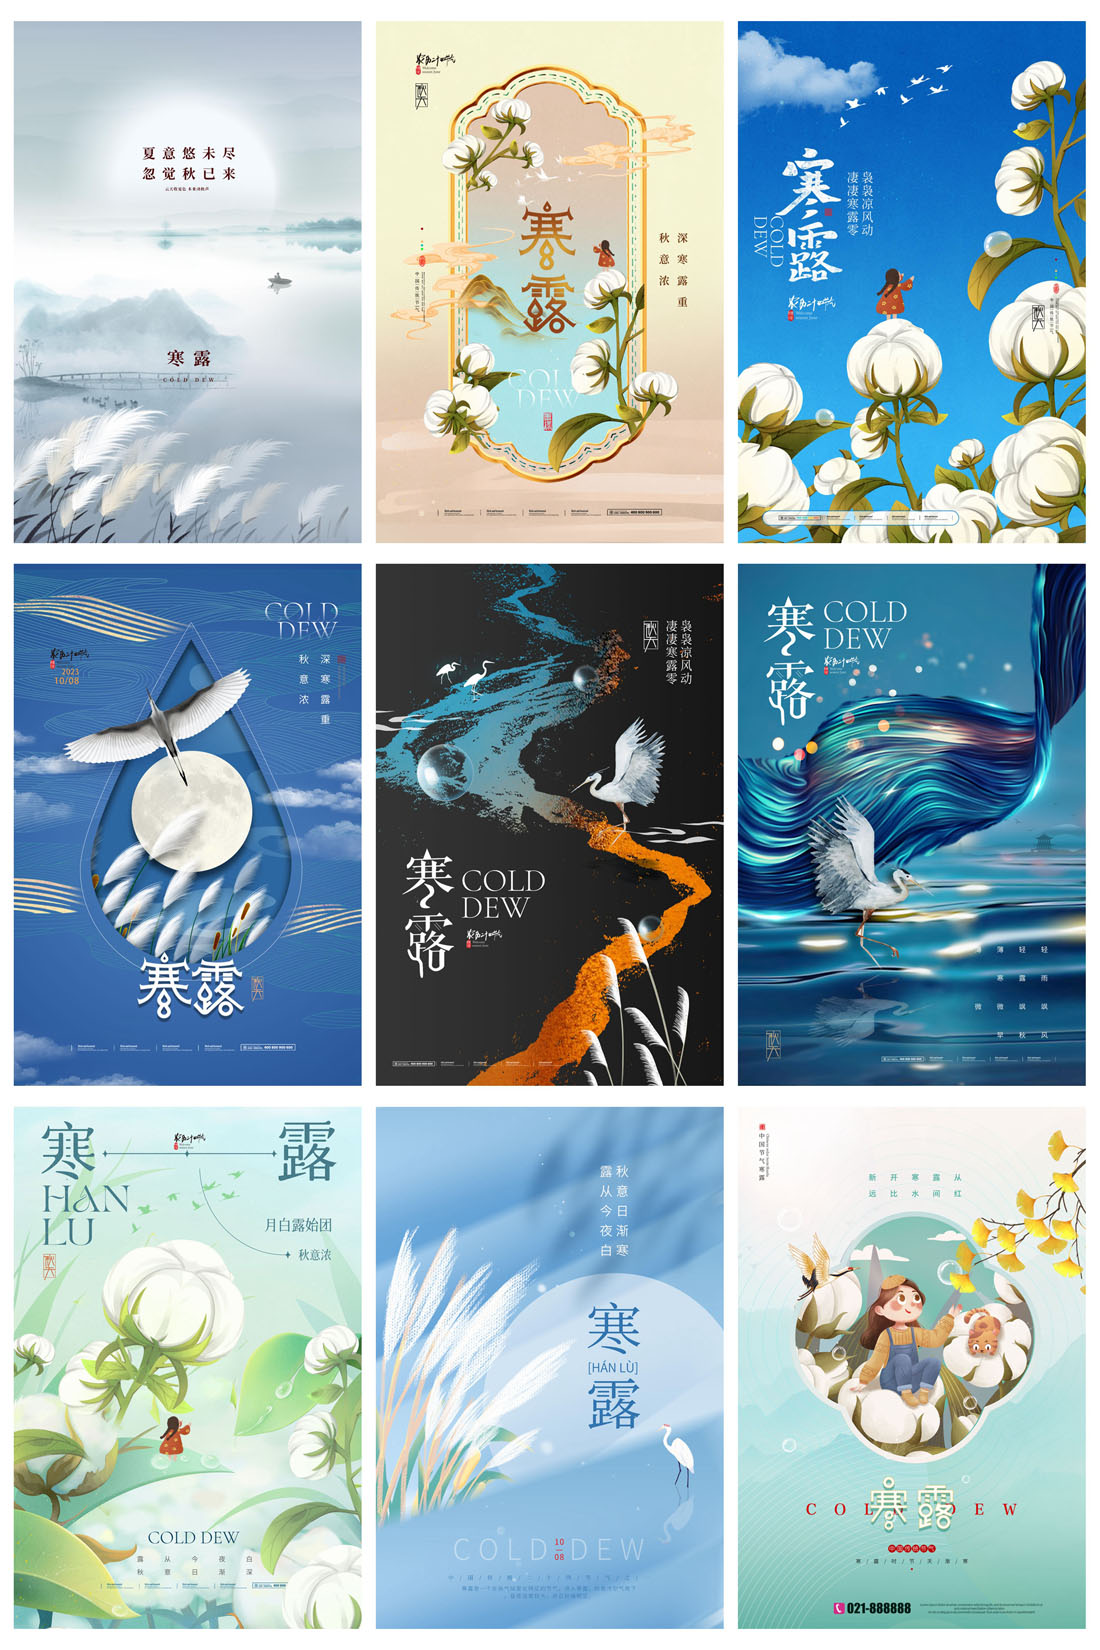 94款中国传统二十四节气之寒露节日海报PSD模板 设计素材 第13张